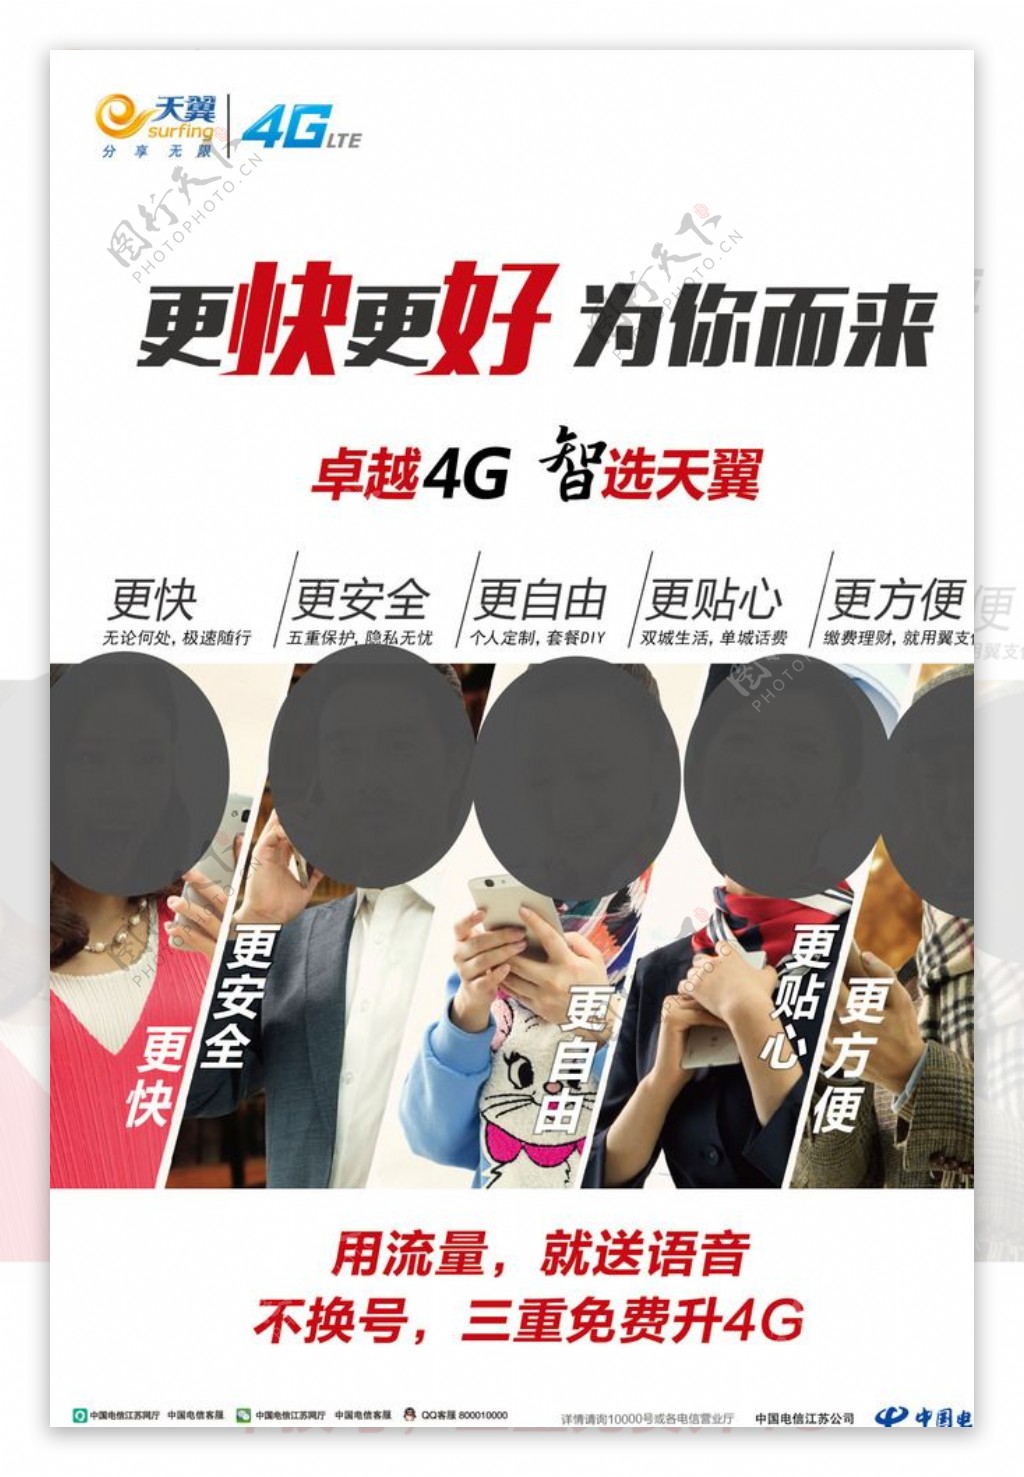 中国电信天翼4g宣传图片